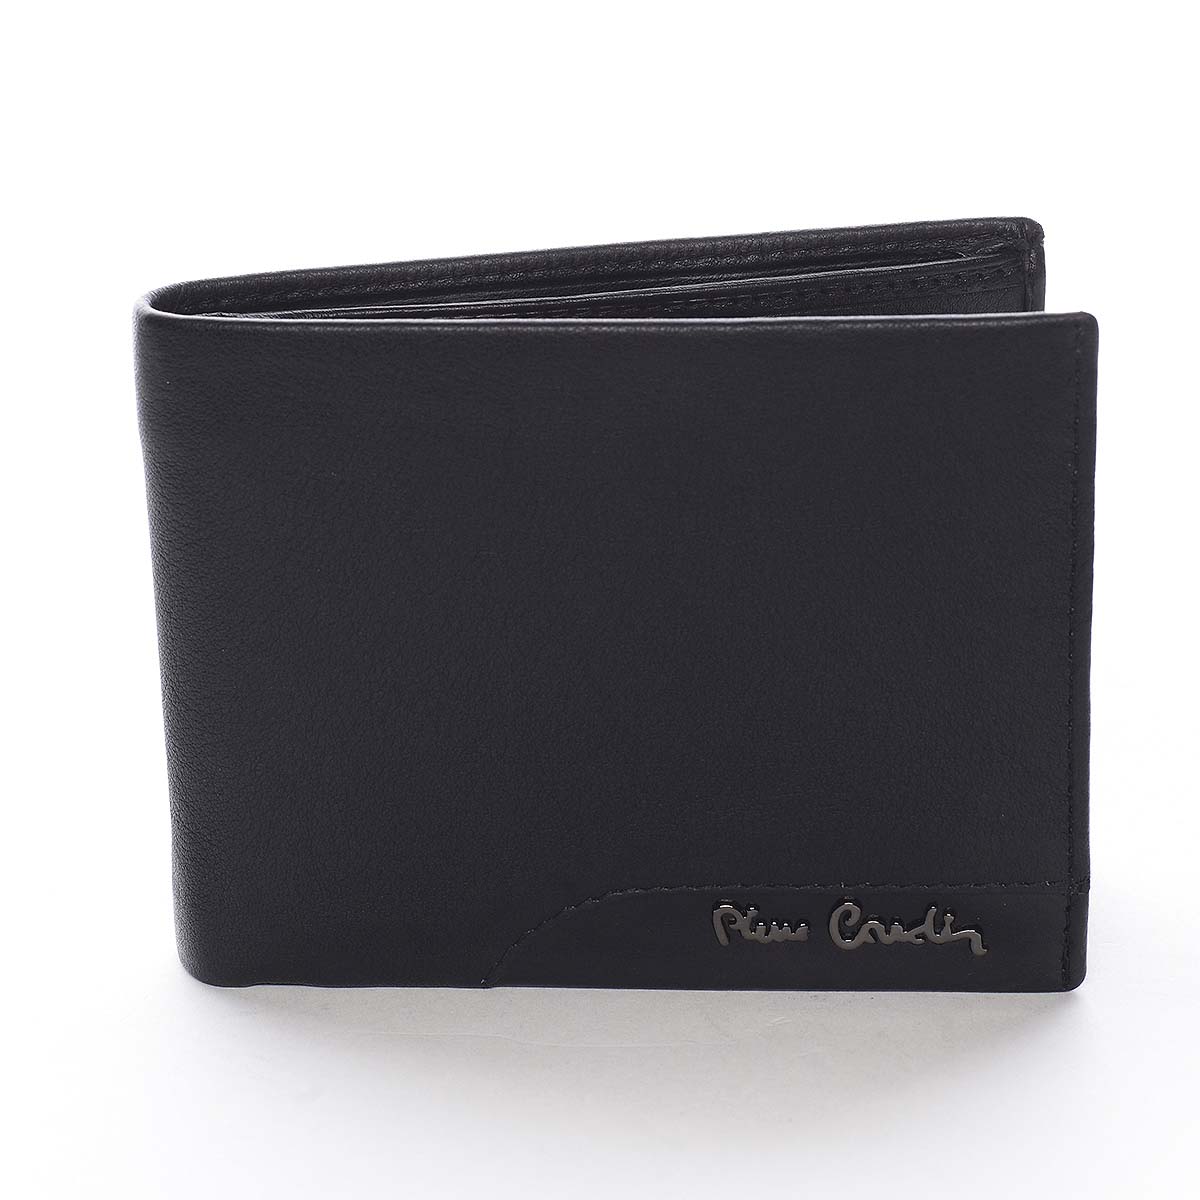 Pánska kožená peňaženka čierna - Pierre Cardin Medard Nero